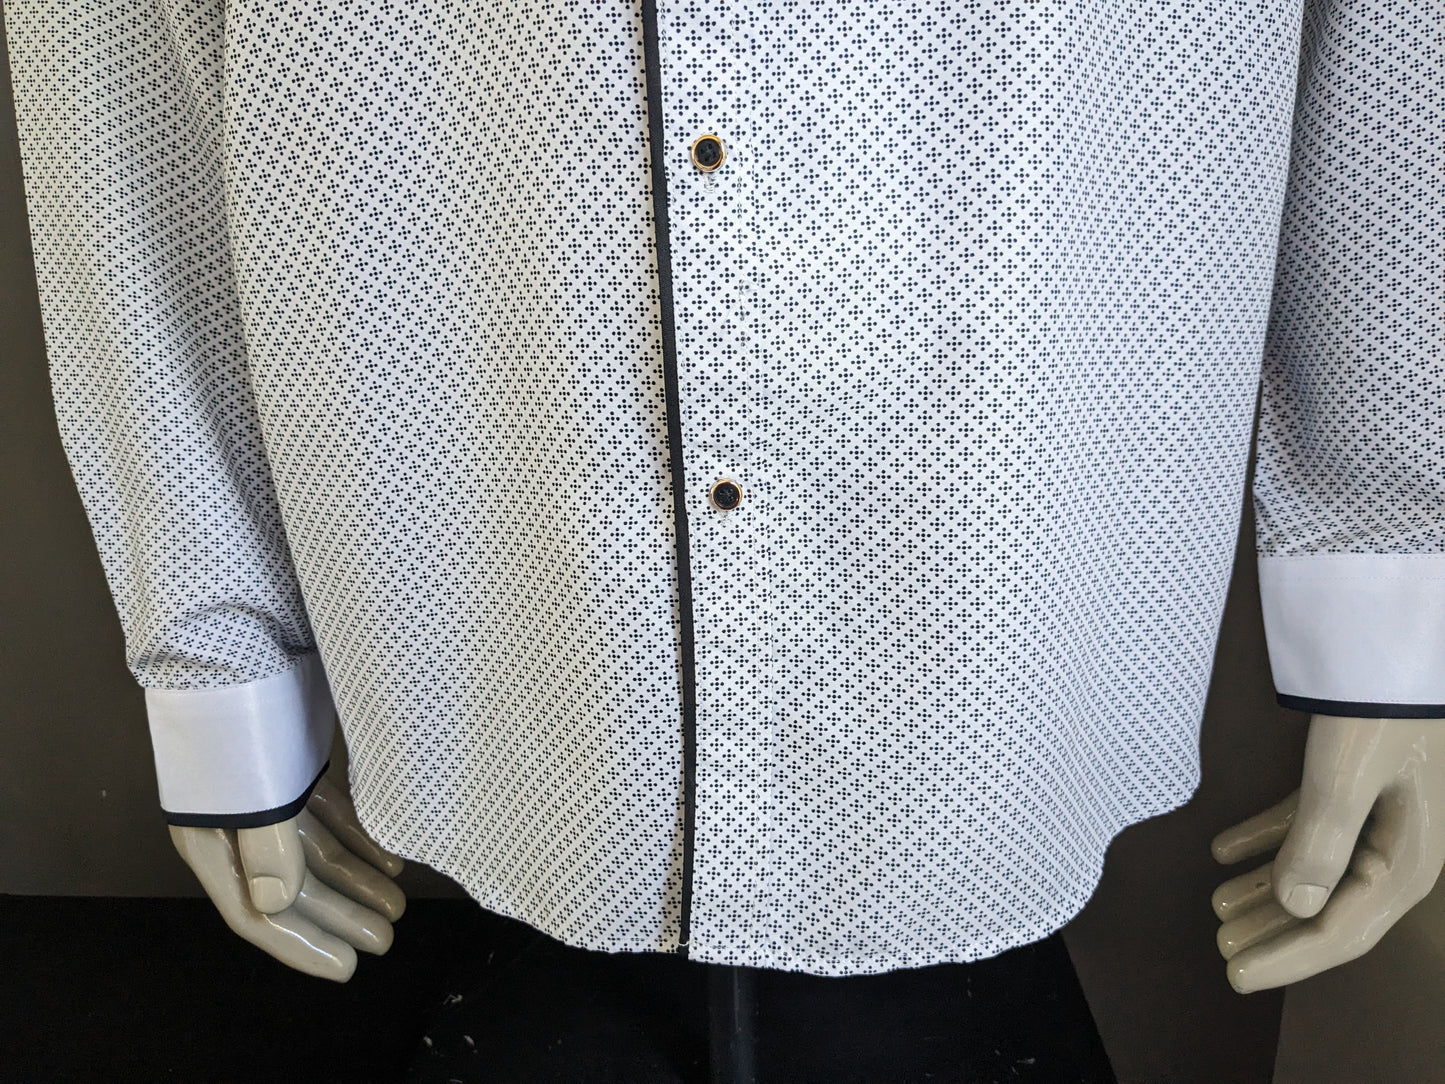 Brandless shirt. Black and white motif. Size 46 / 2XL / XXL.